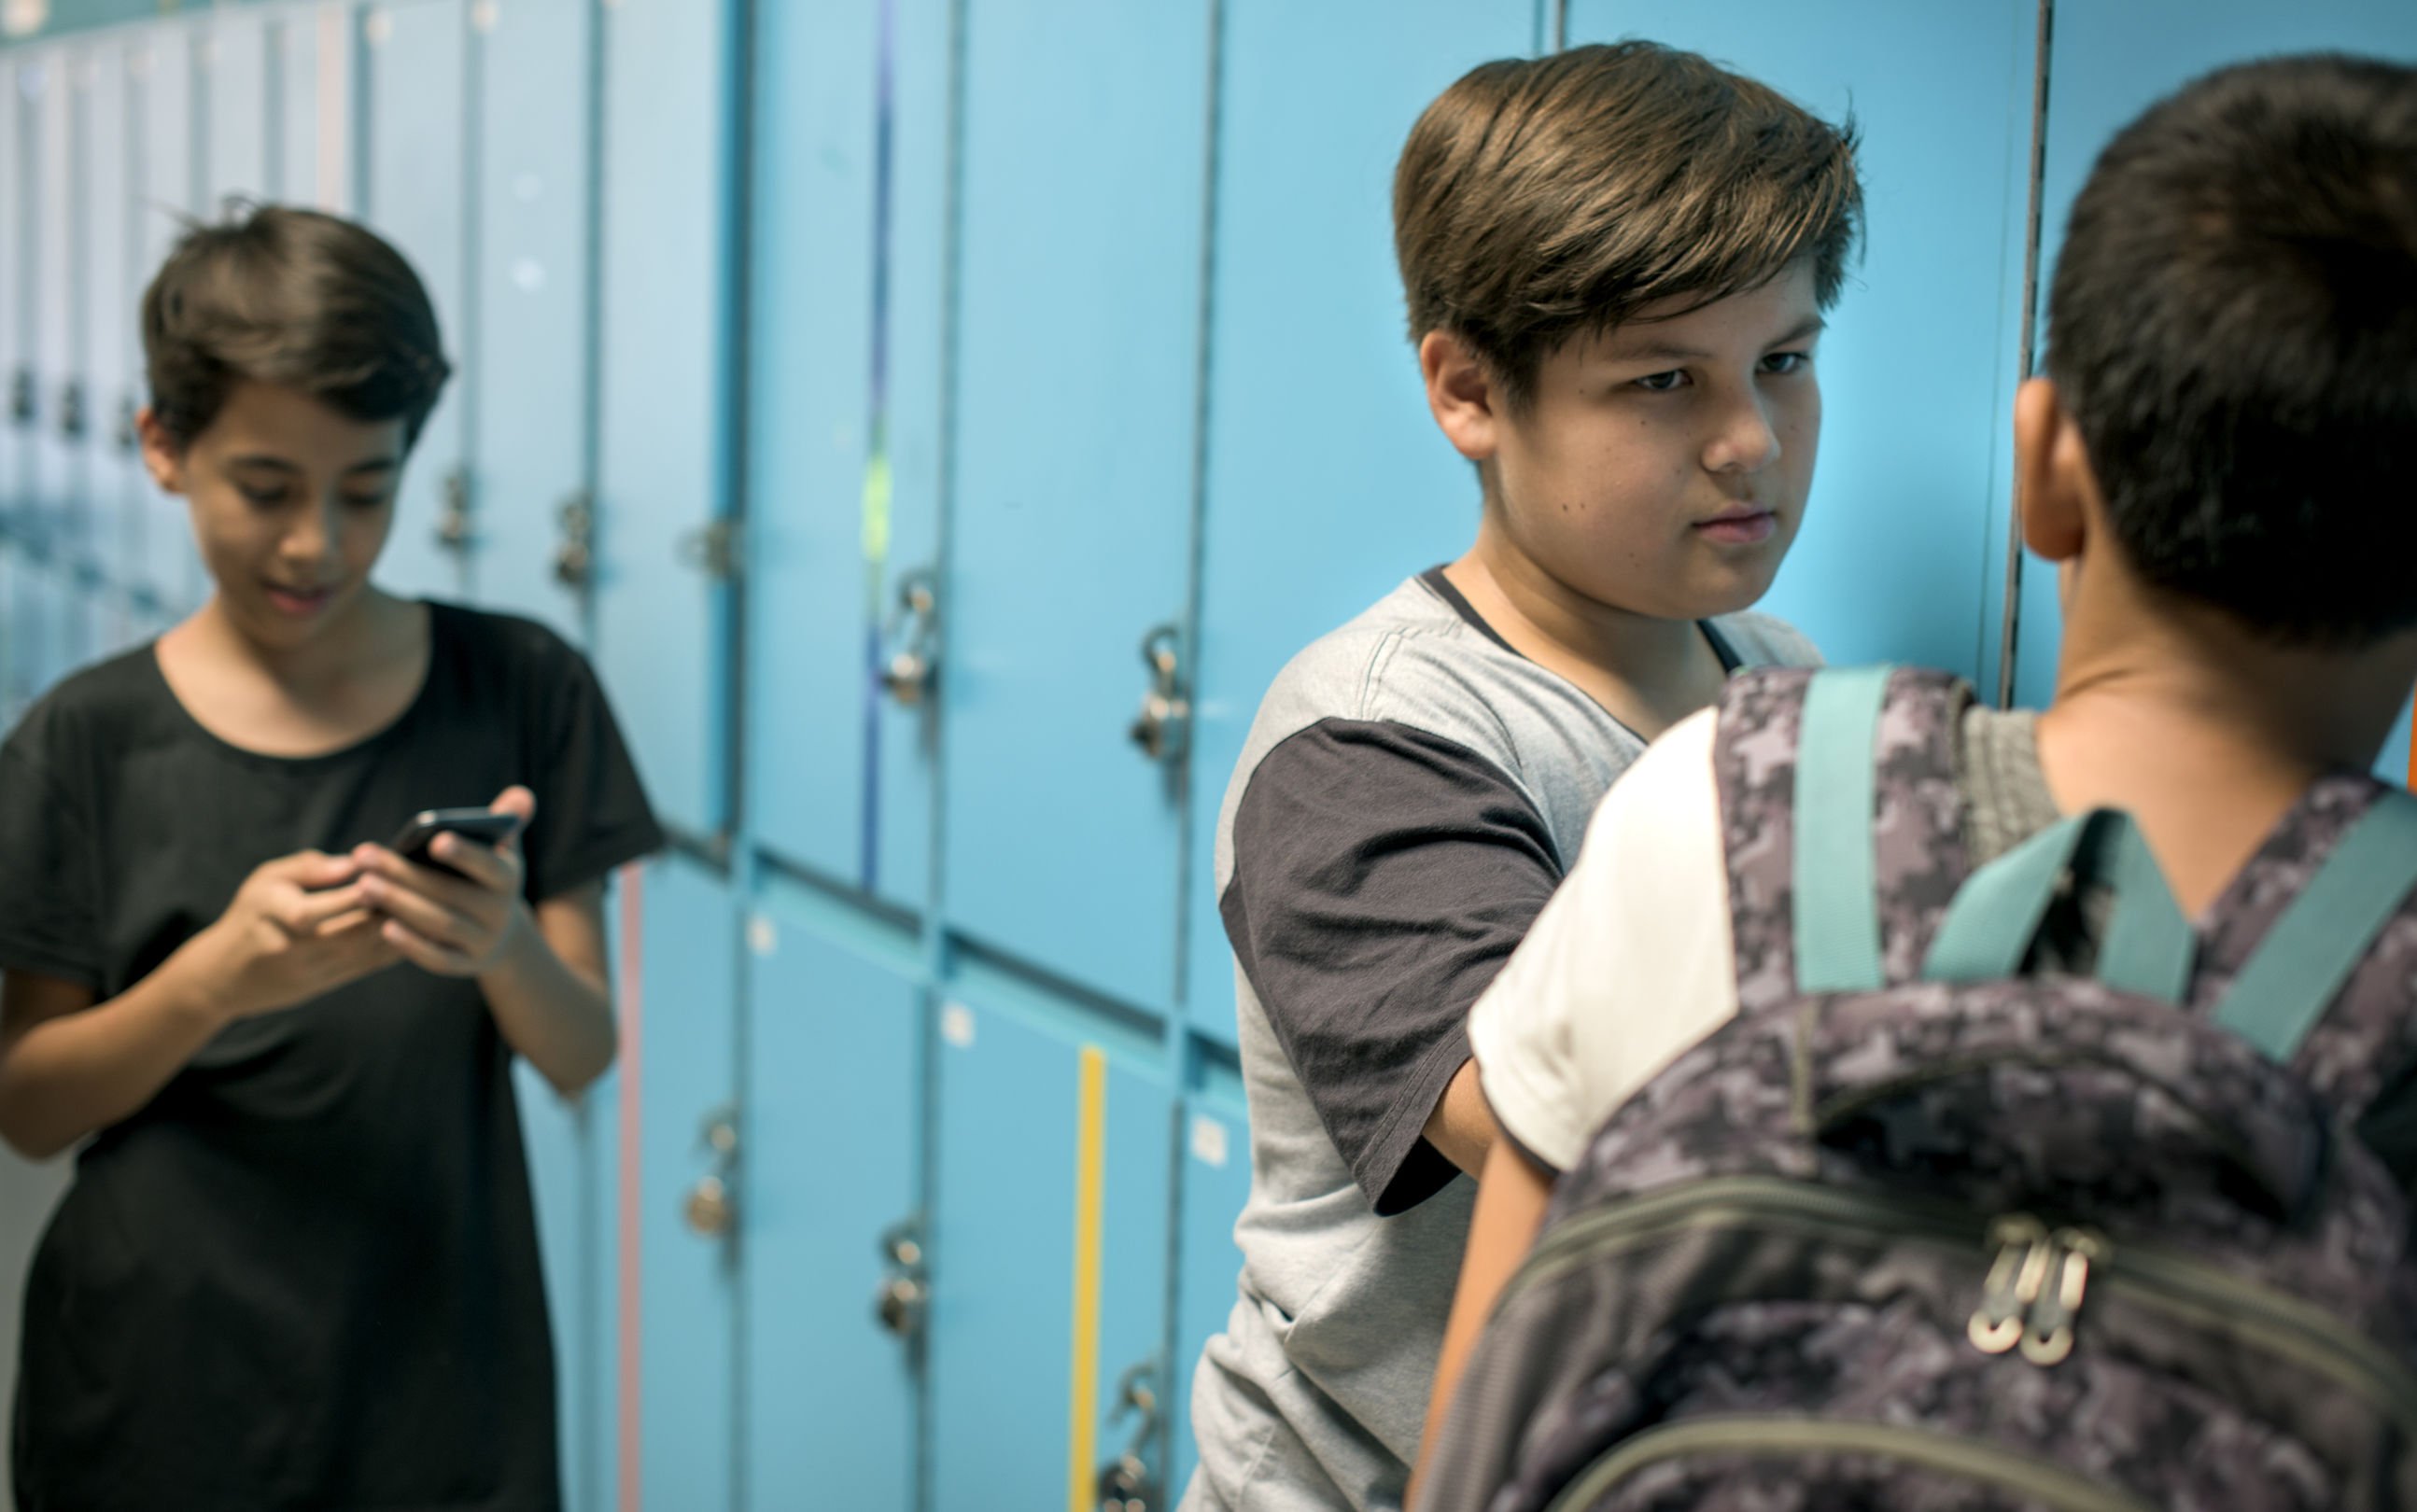 Meninos em corredor de escola, perto de armários azuis